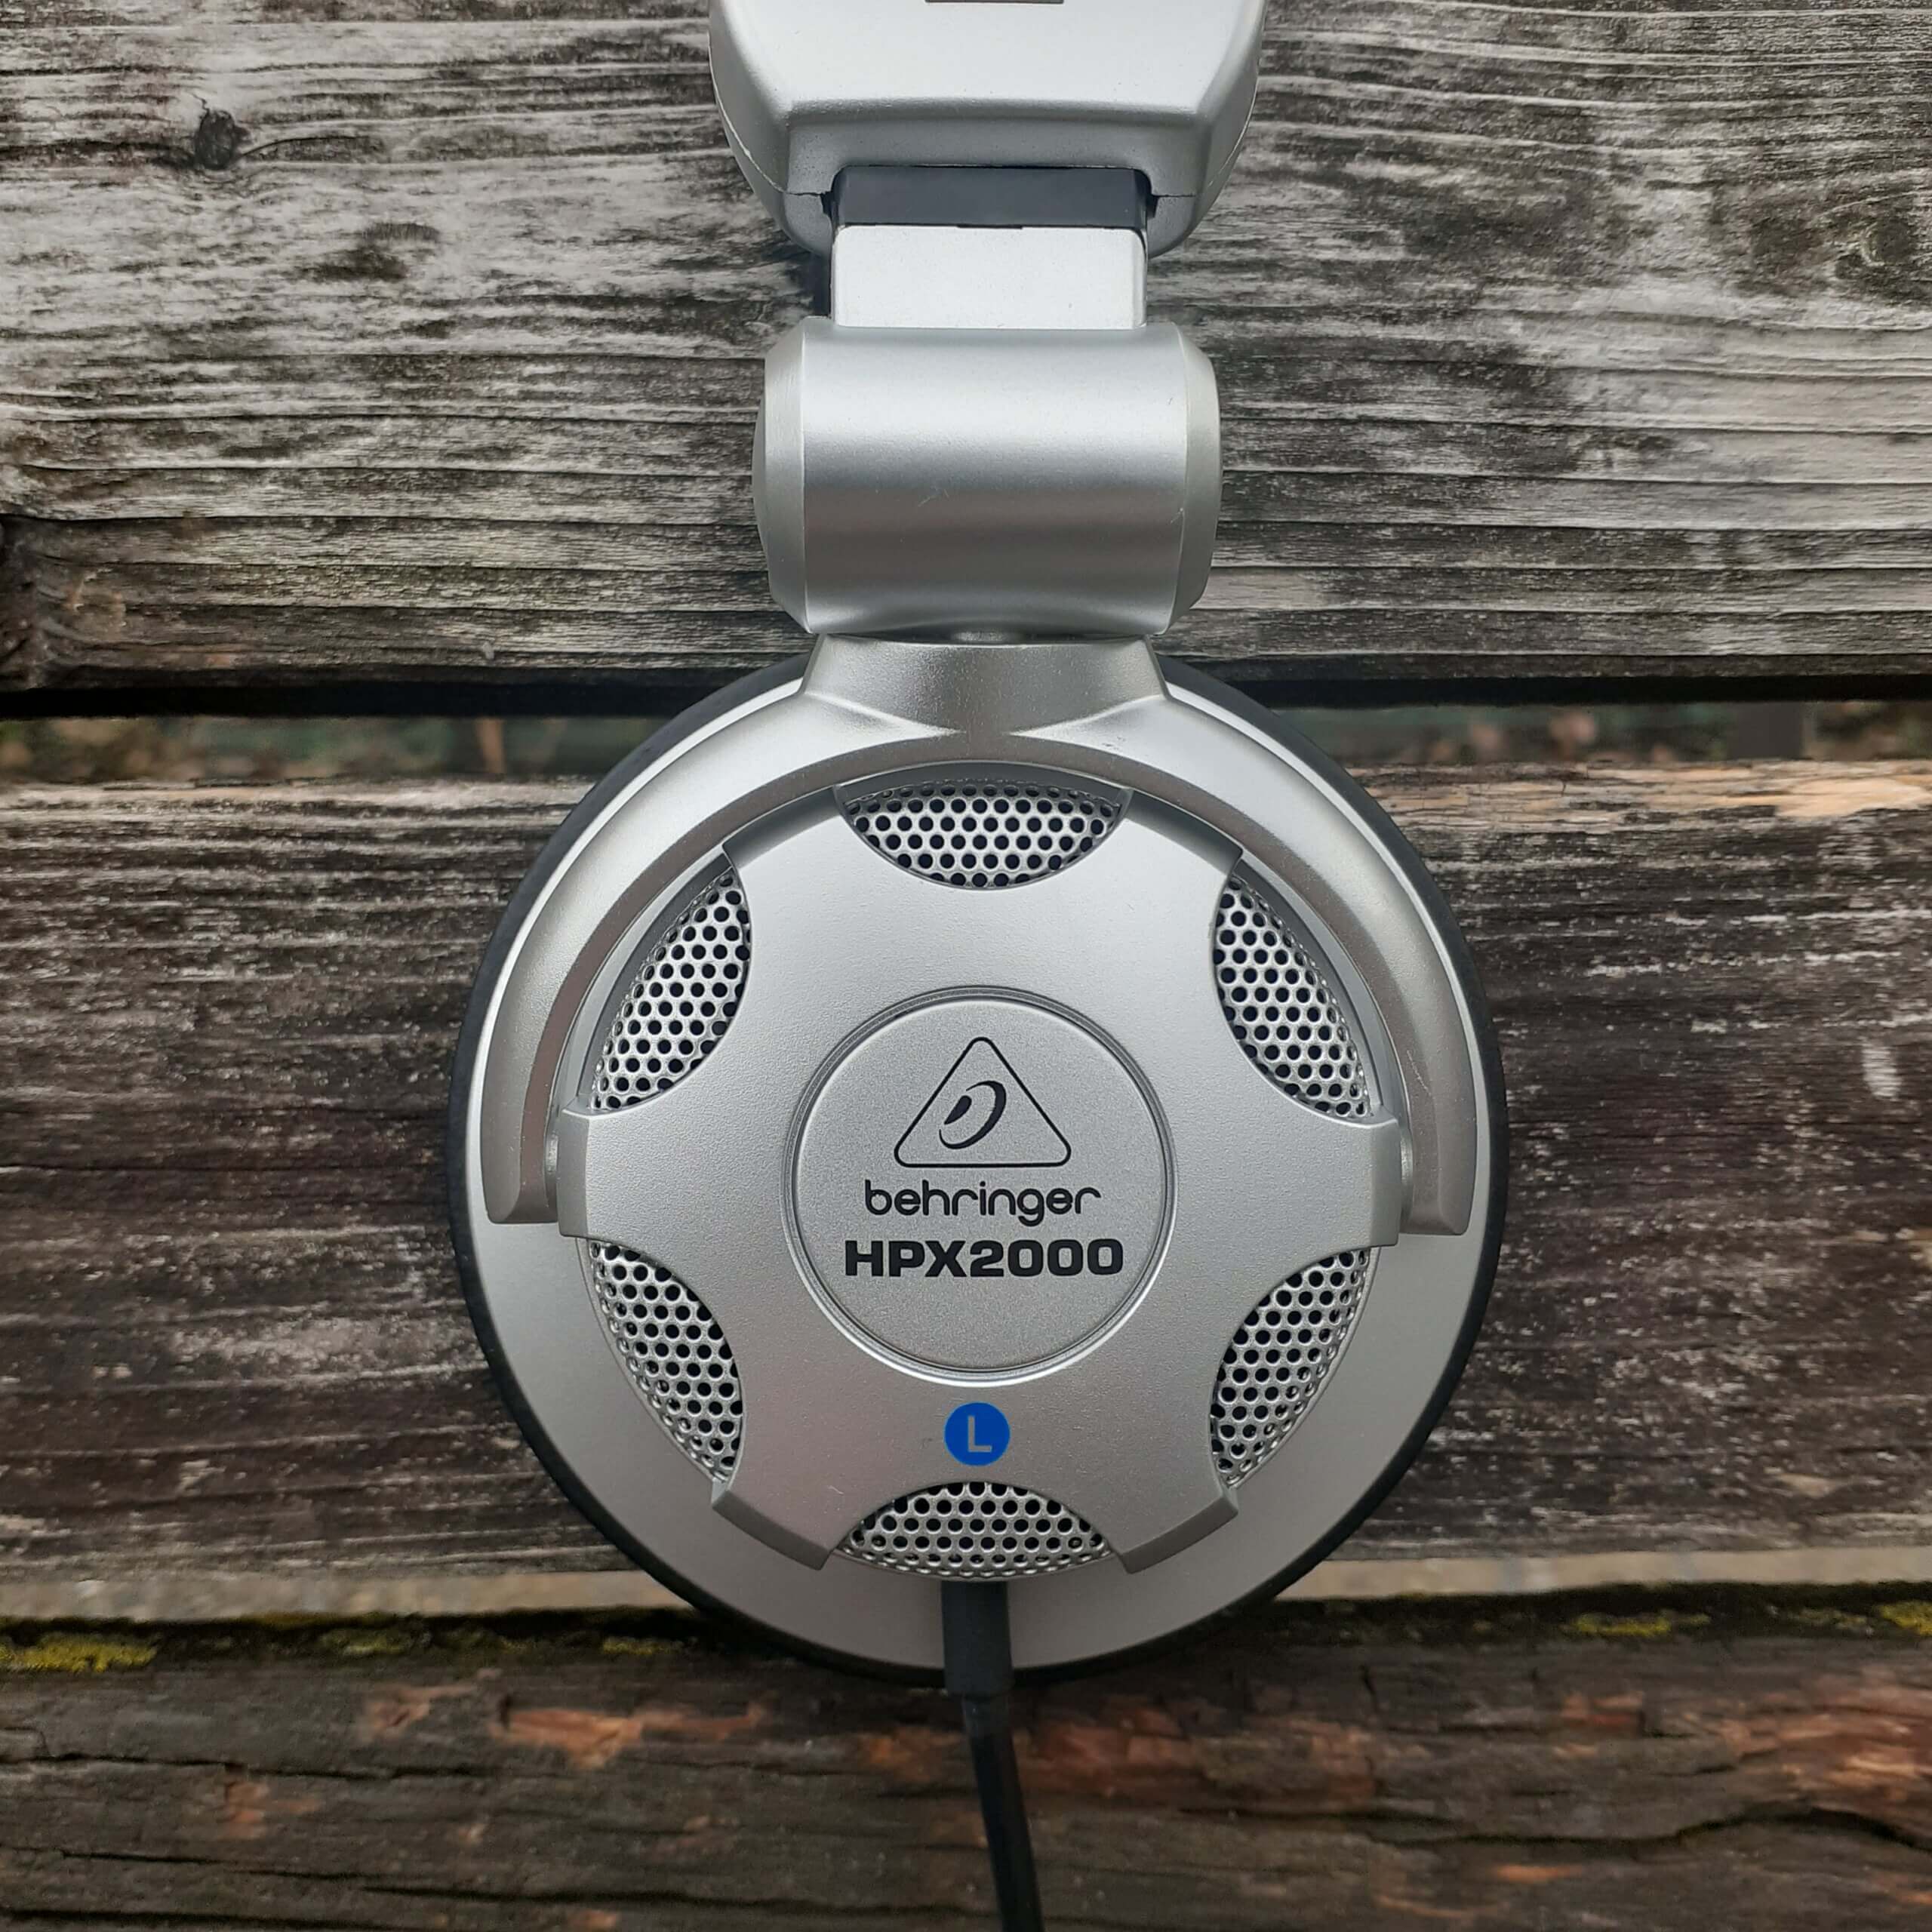 【モニターヘッドホン Behringer HPX2000 レビュー】DJの現場での使用に最適化された実用的なモニター。中域の質感表現が非常に素晴らしい。しかし、普通に音楽鑑賞するにはレンジ感が悪く、安っぽく聞こえる